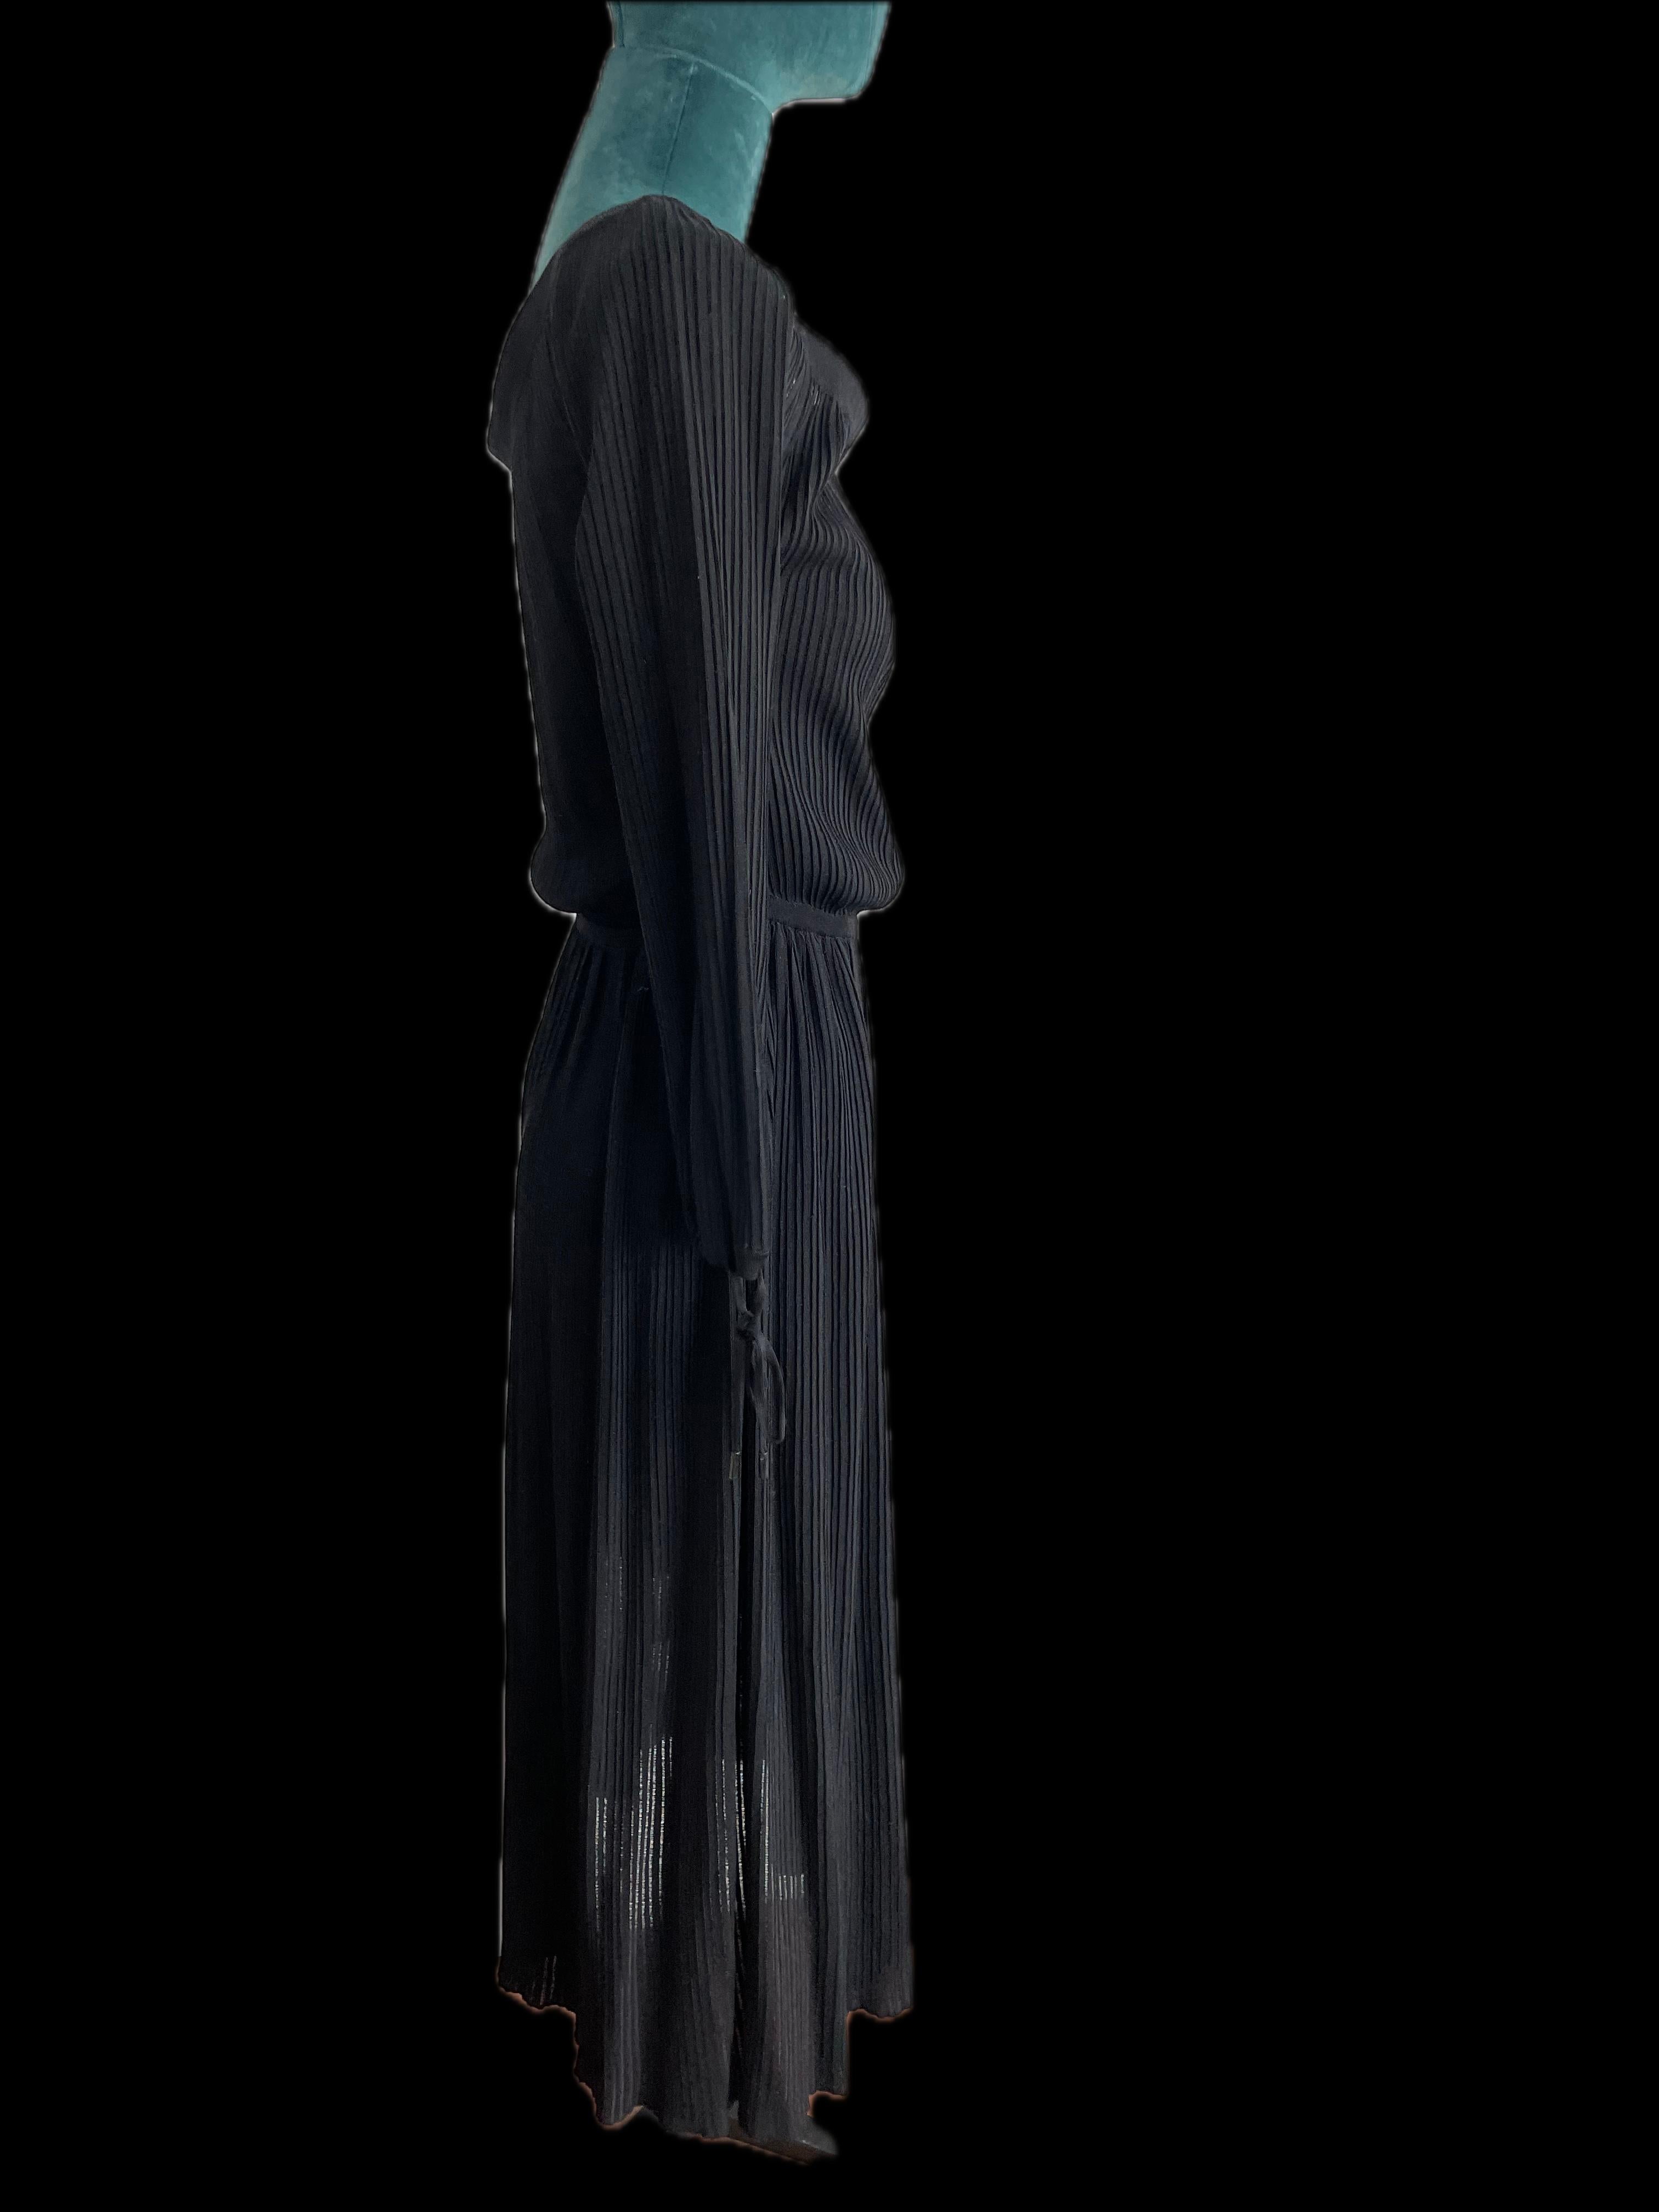 
Der Inbegriff von Vielseitigkeit und Eleganz: das schwarze Tageskleid von Gabriela Hearst. Mit viel Liebe zum Detail gefertigt und für die moderne Frau entworfen, verbindet dieses exquisite Stück nahtlos Raffinesse mit Funktionalität.

Das Kleid